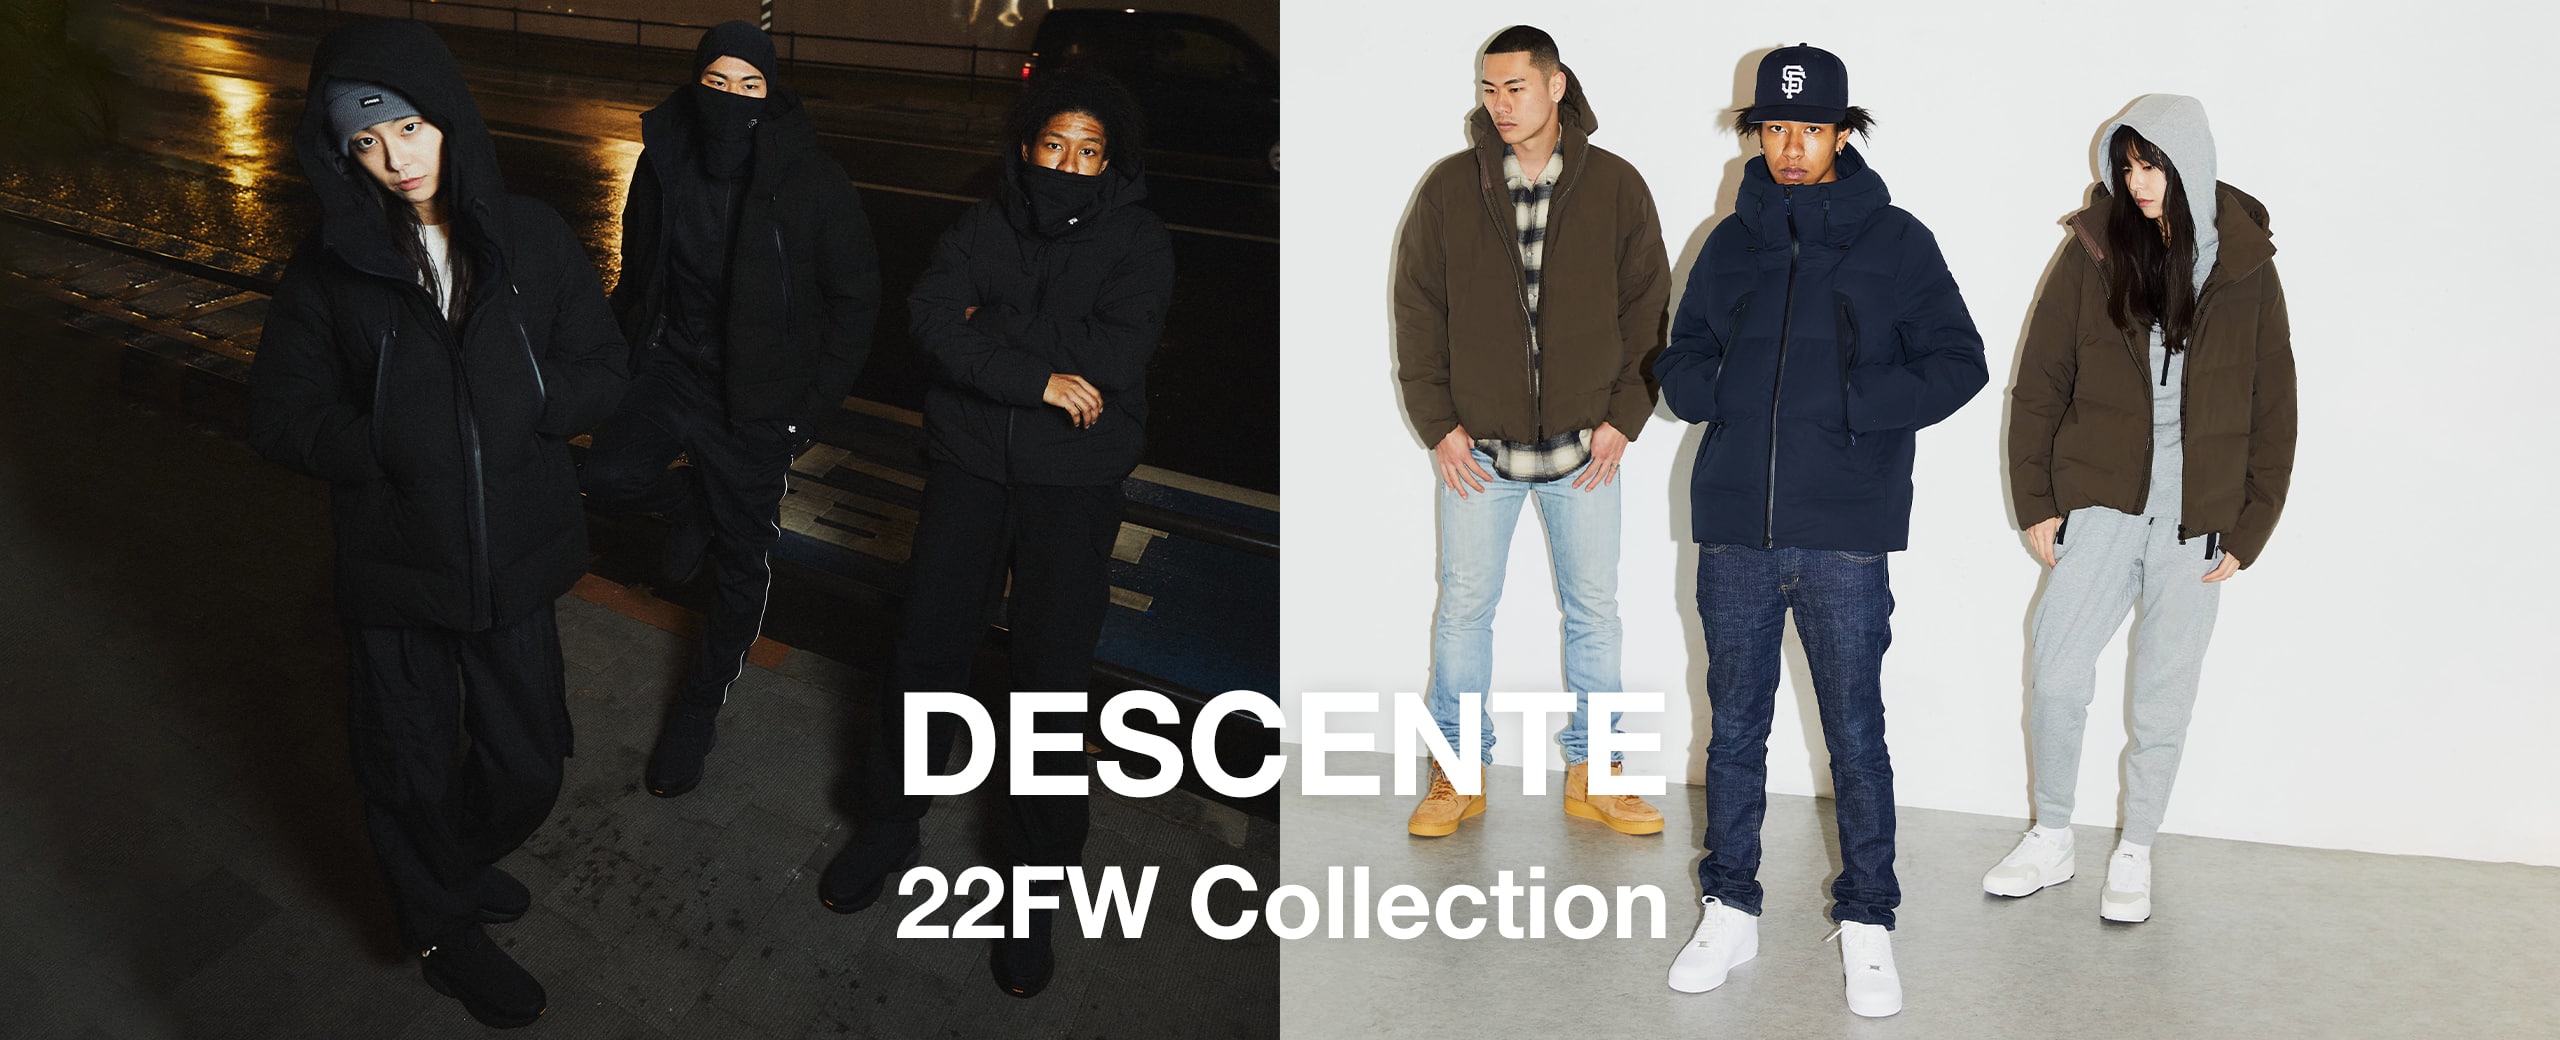 "DESCENTE 22FW Collection"